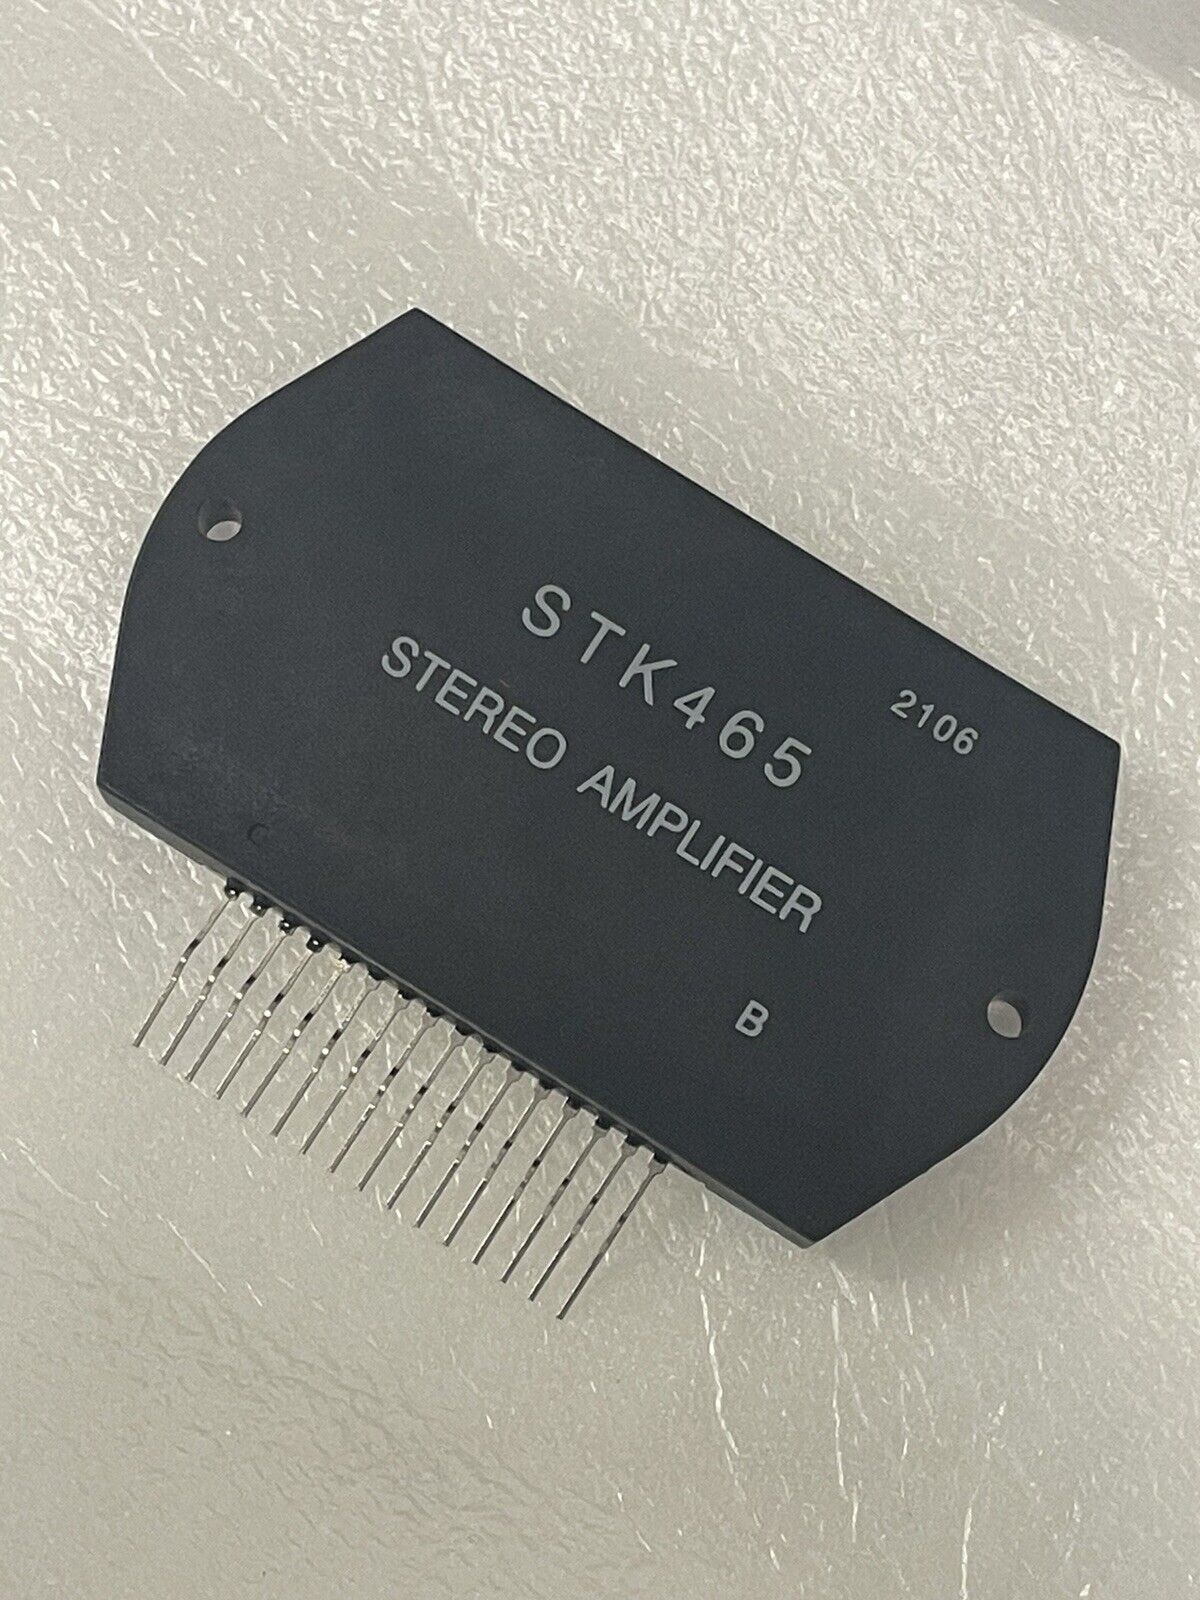 USA Stock STK465 STK-465 STK 465 ZIP-16 Audio power amplifier module